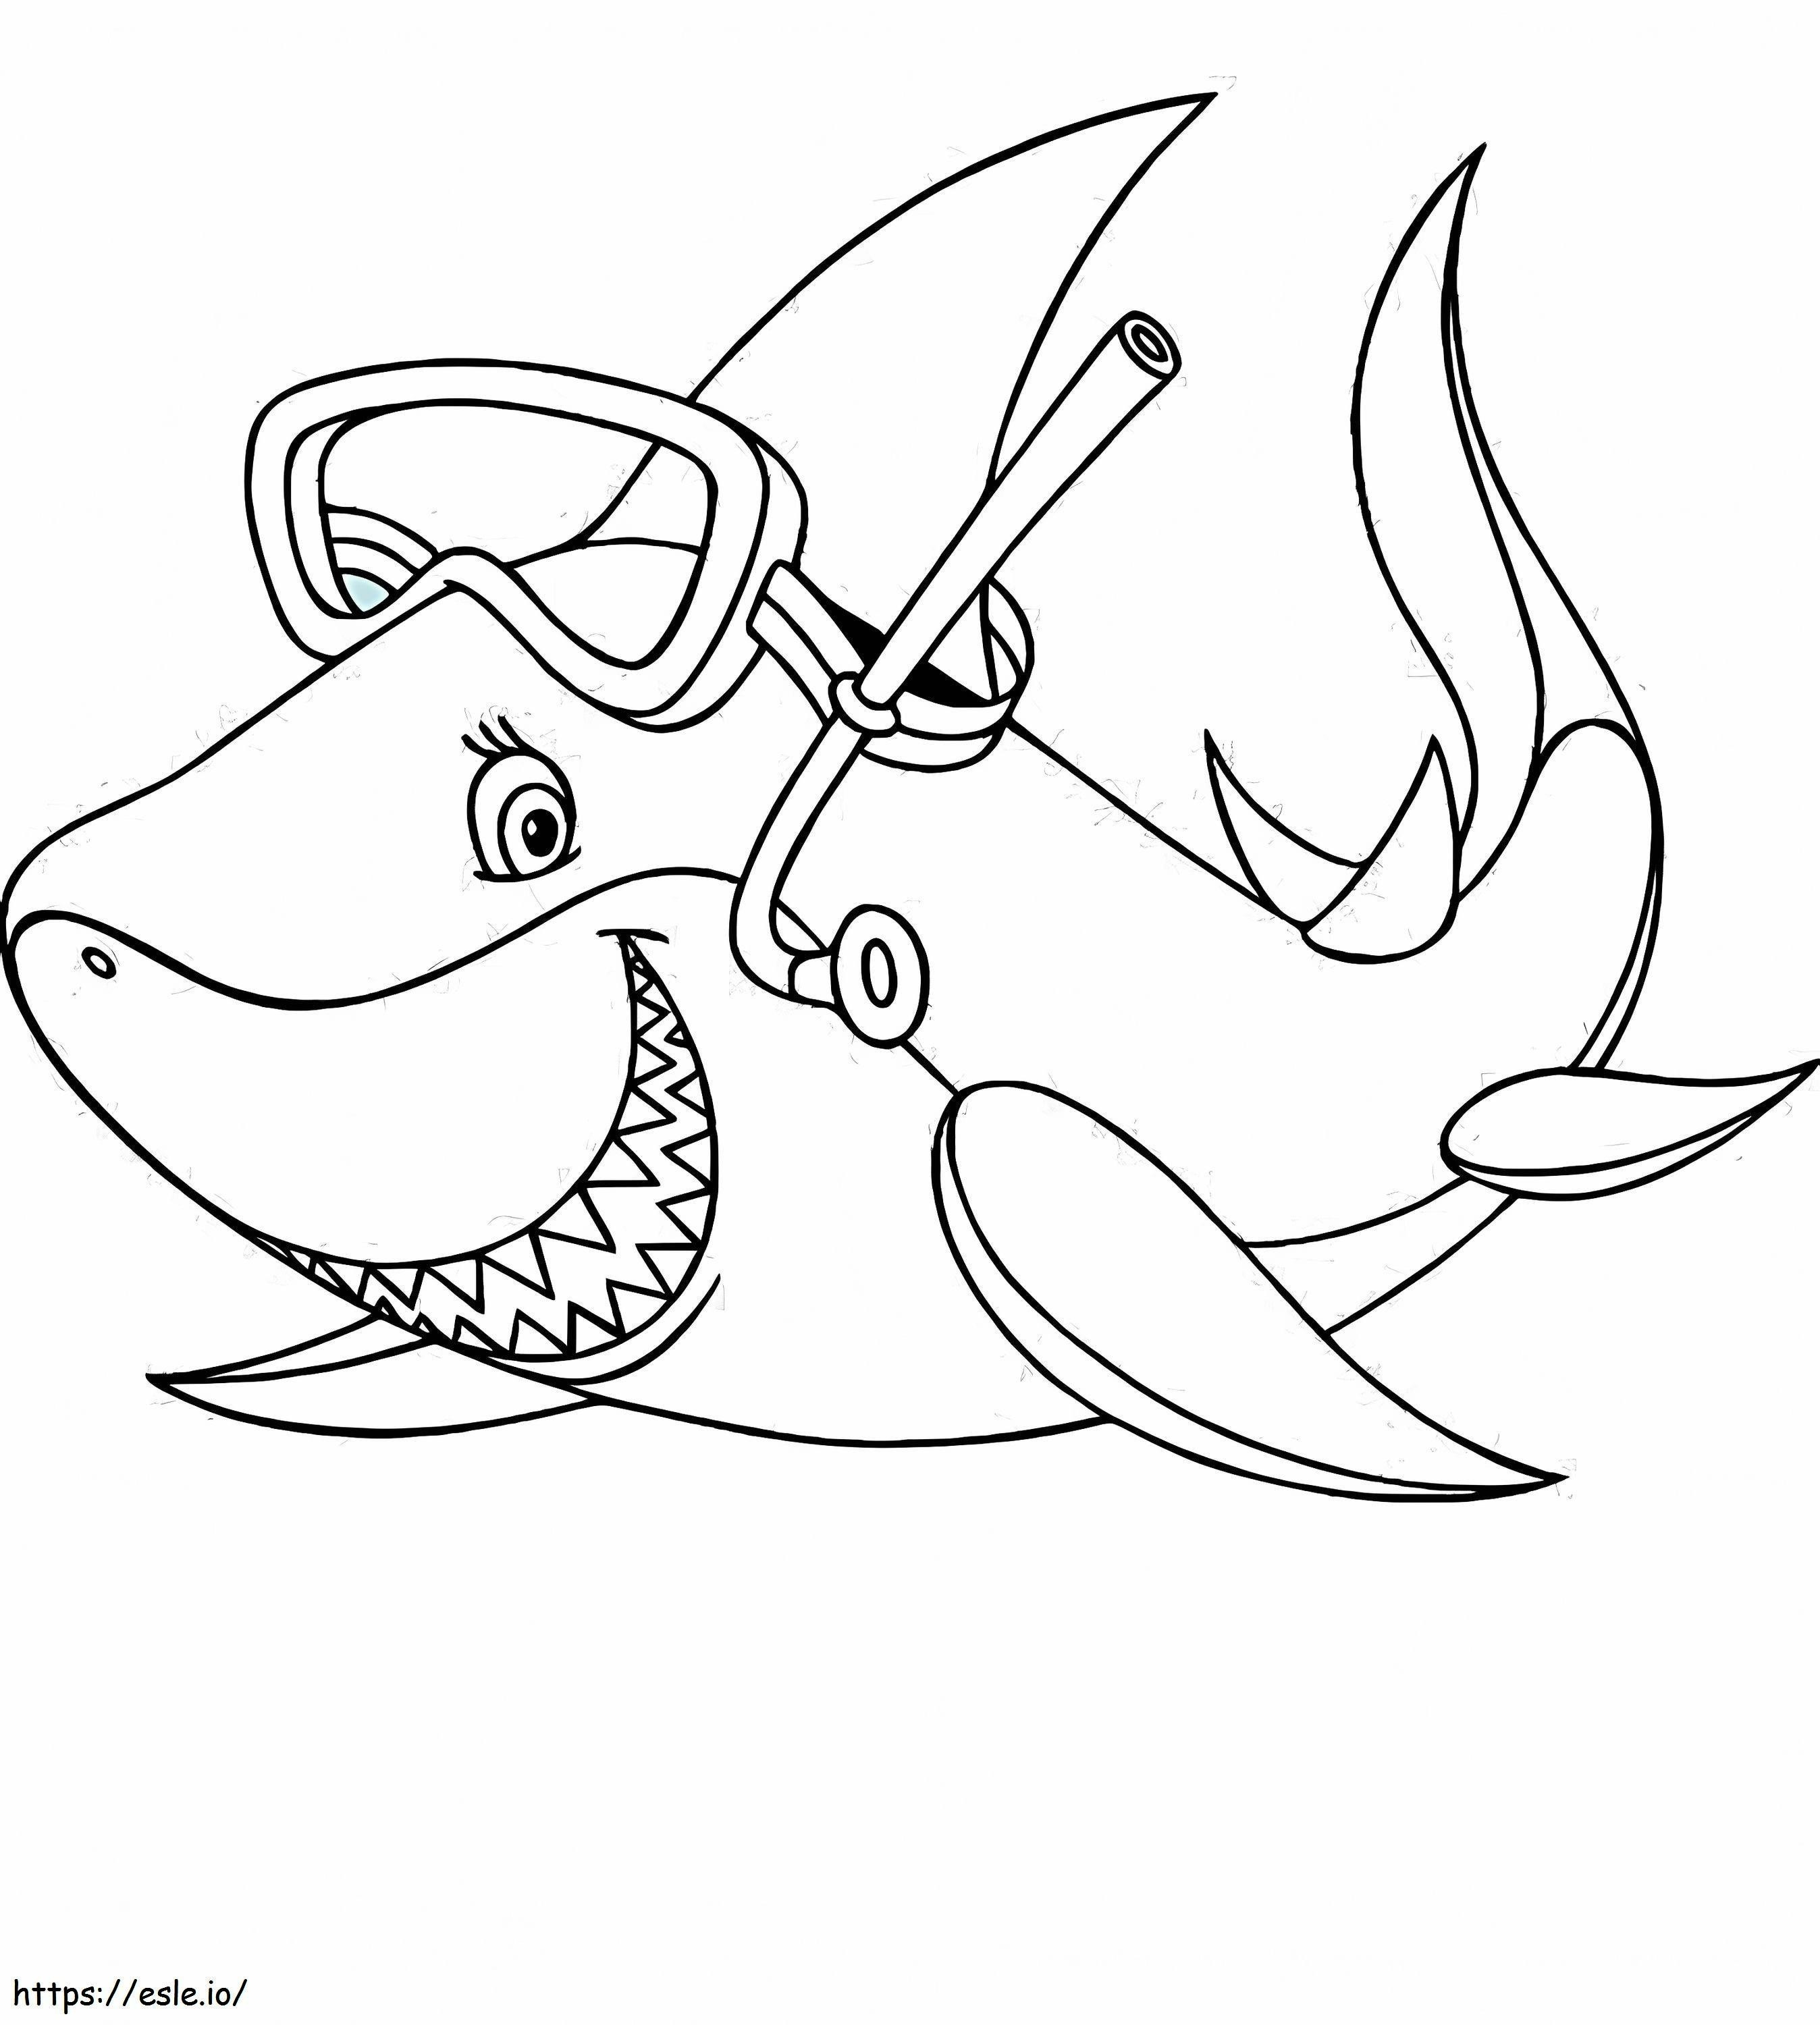 1541748815_Pagina da colorare di uno squalo Nuovo squalo di di uno squalo da colorare